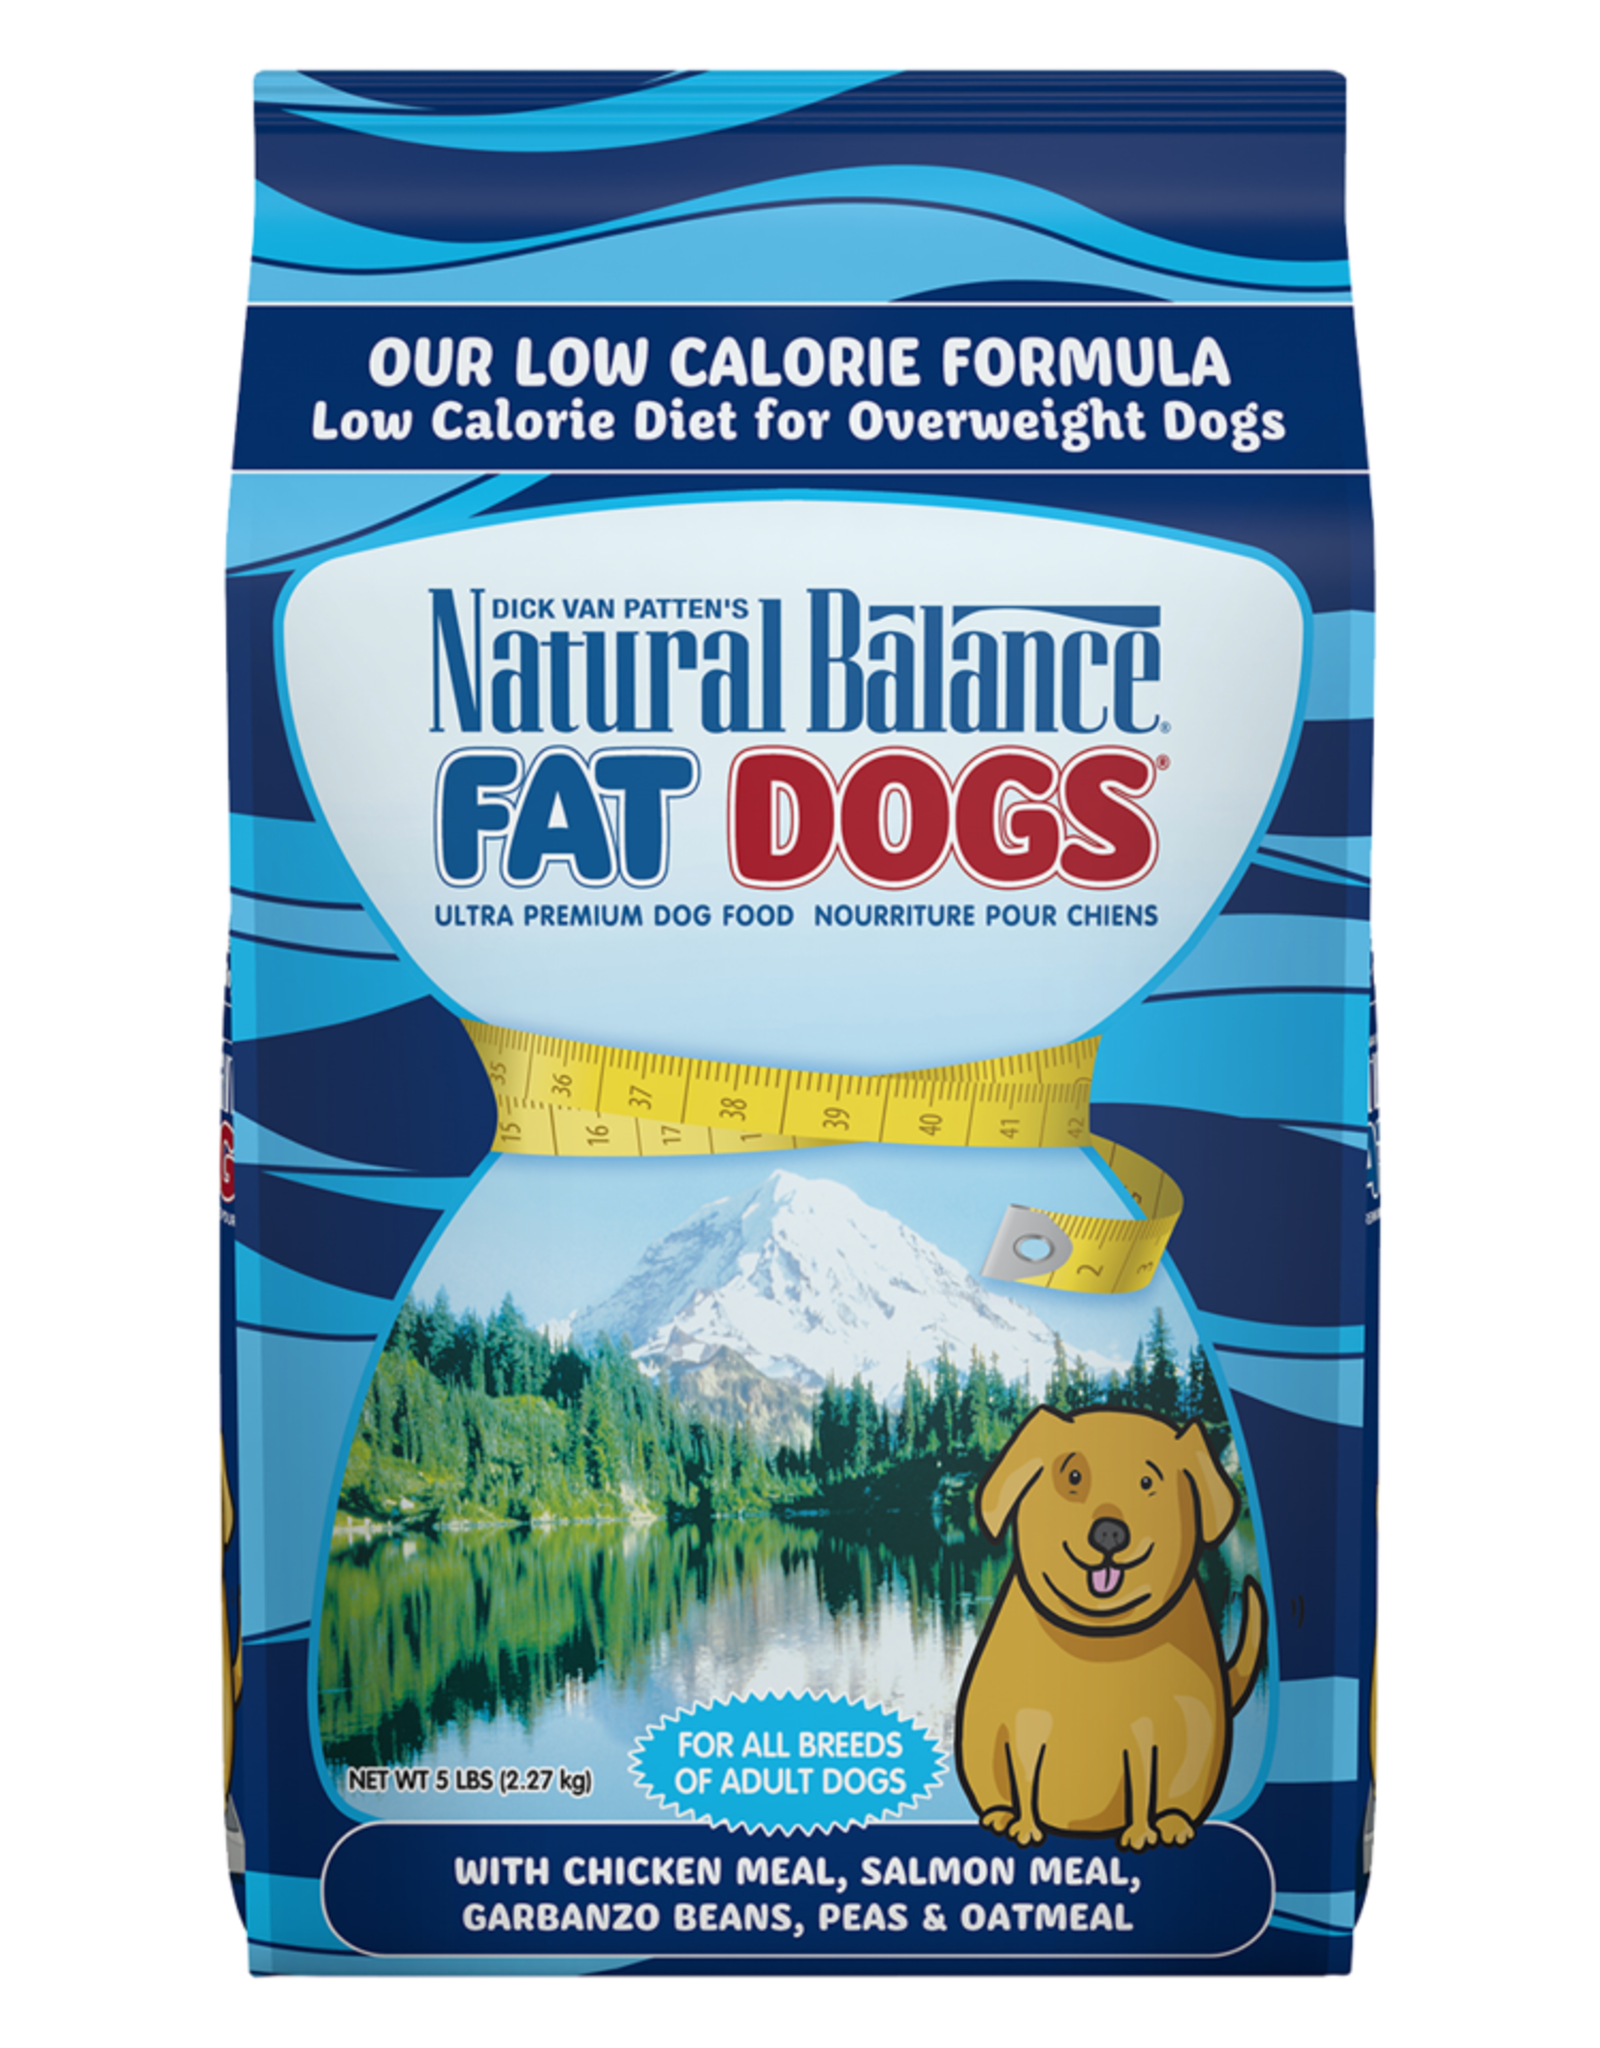 NATURAL BALANCE PET FOODS, INC NATURAL BALANCE FAT DOGS LOW CALORIE 24 LBS